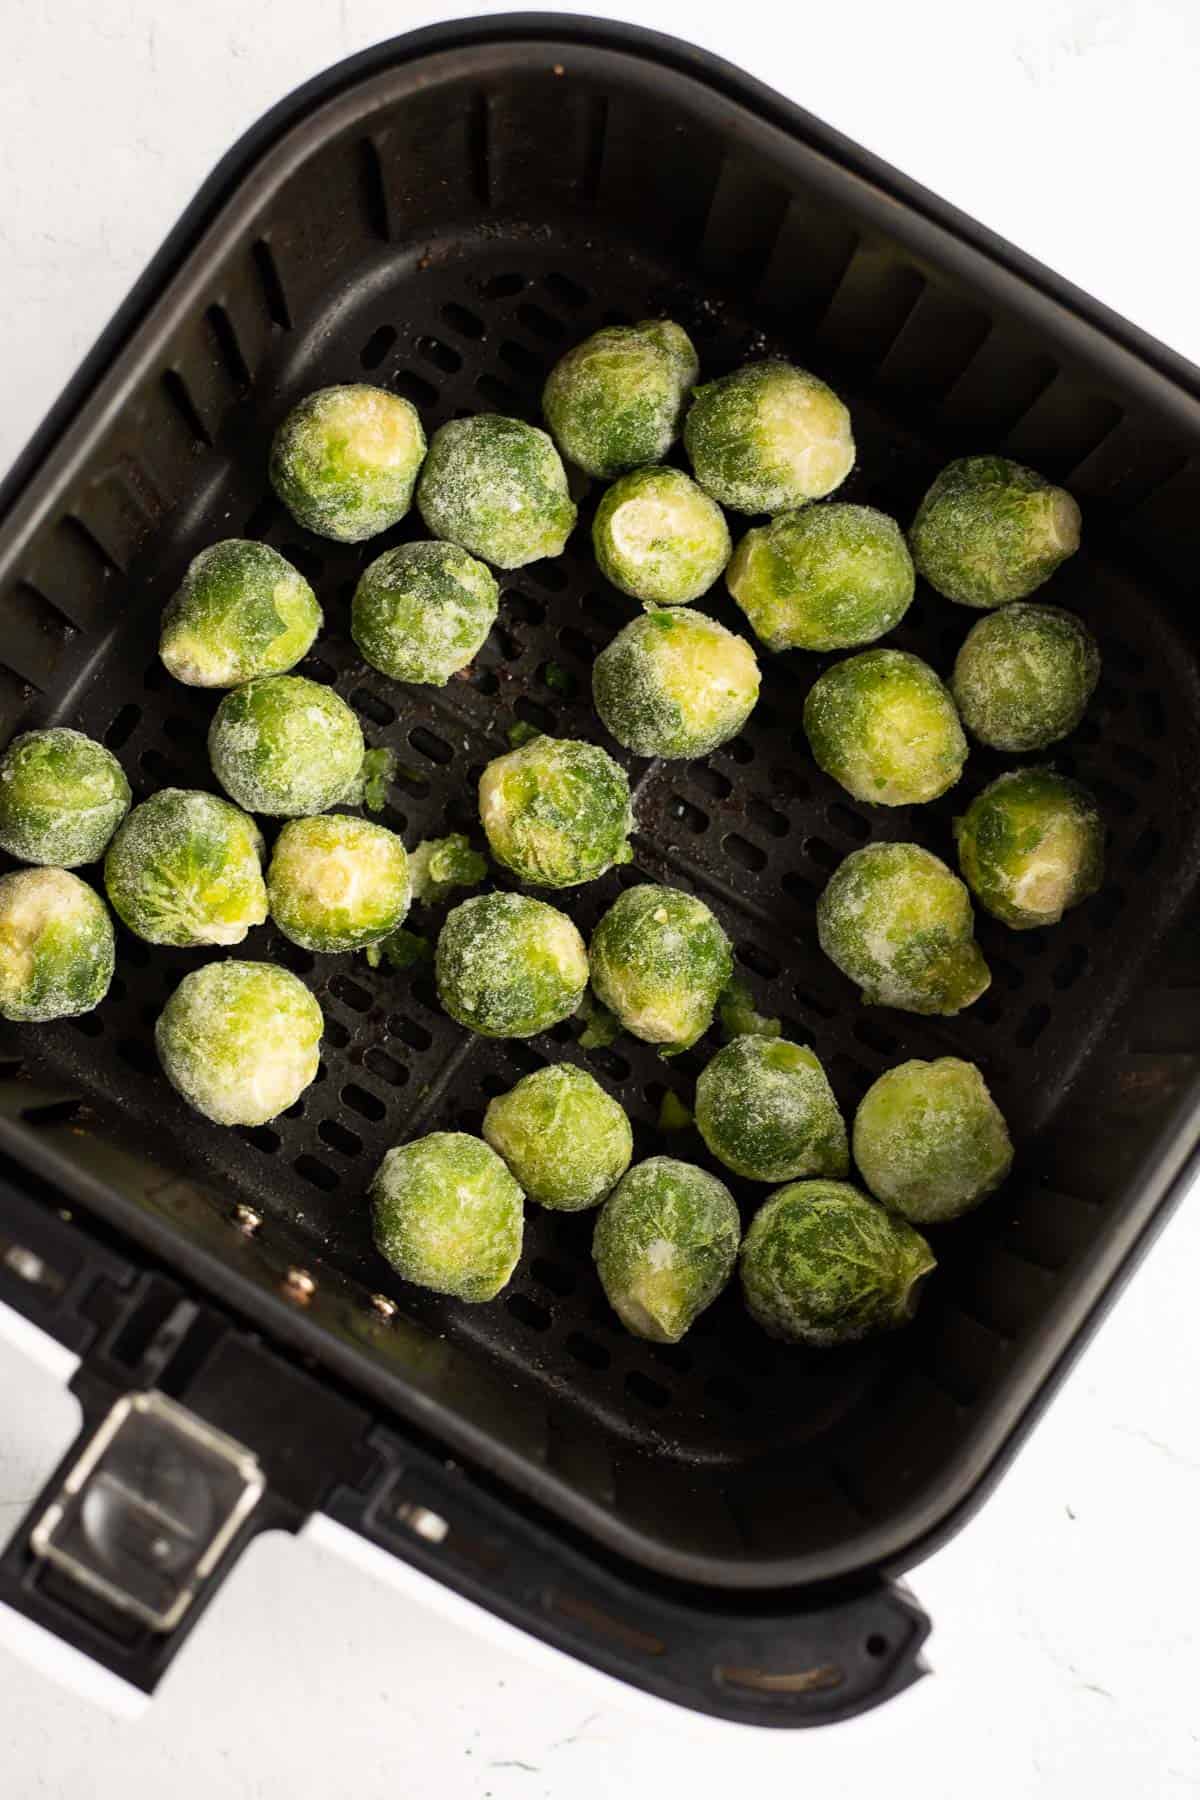 frozen brussels sprouts in air fryer basket.